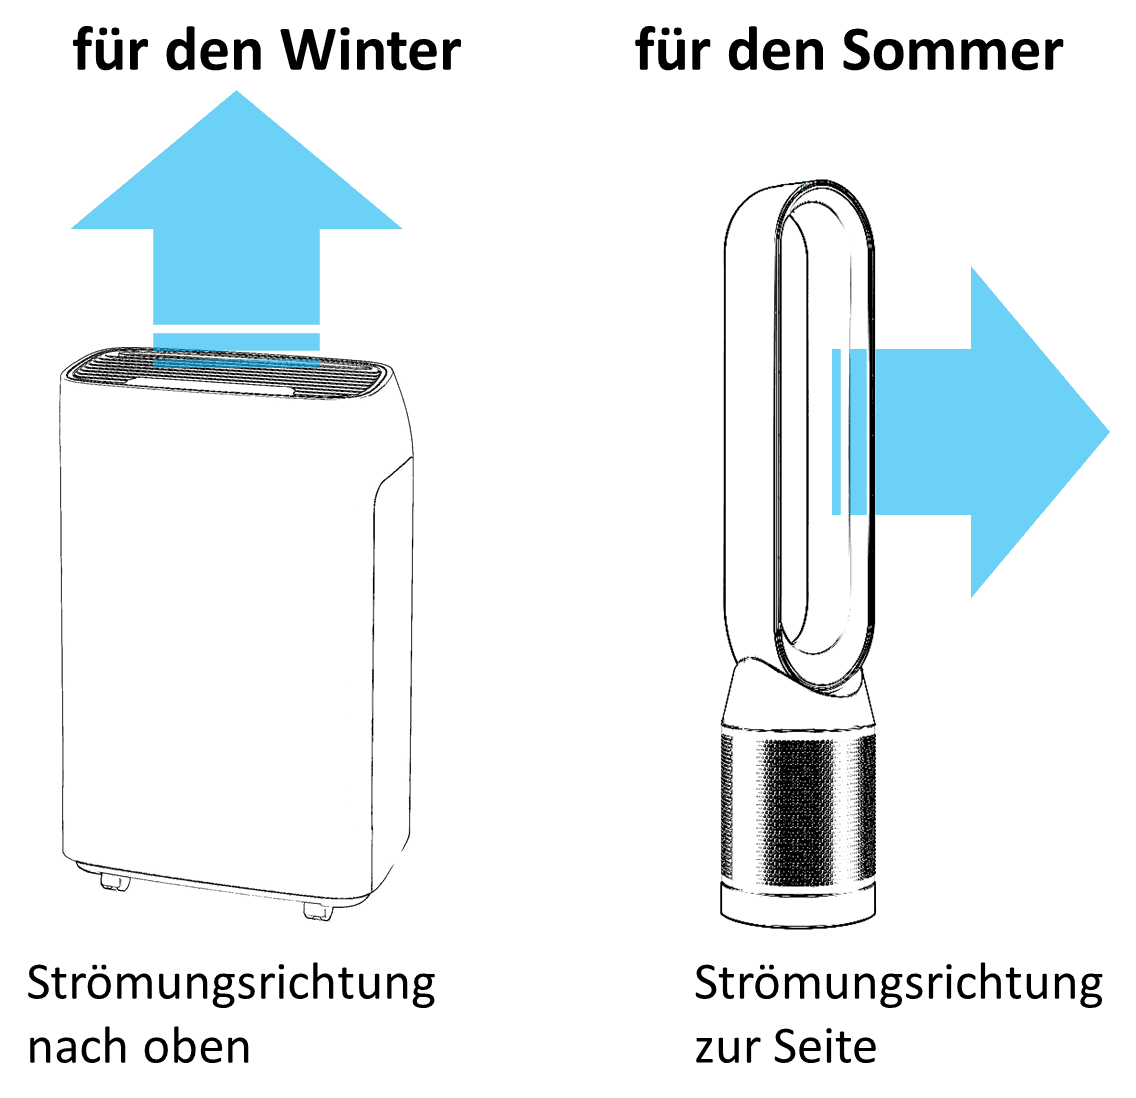 Strömungsrichtung von Luftreiniger nach oben ist besser für den Winter. Strömungsrichtung zur Seite hat kühlenden Effekt im Sommer.